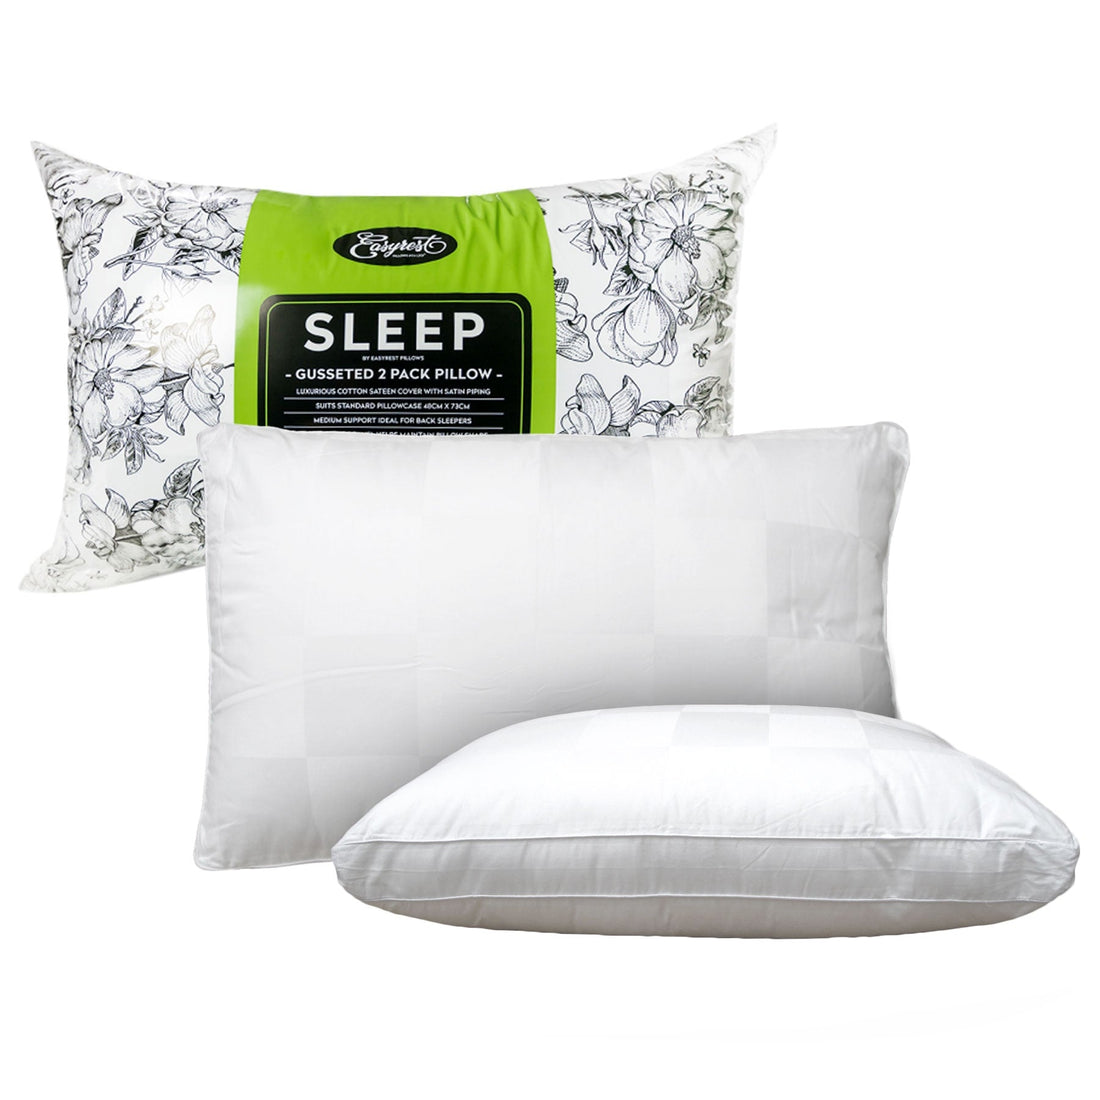 Sleep Twin Pack Gusseted Medium Standard Pillows